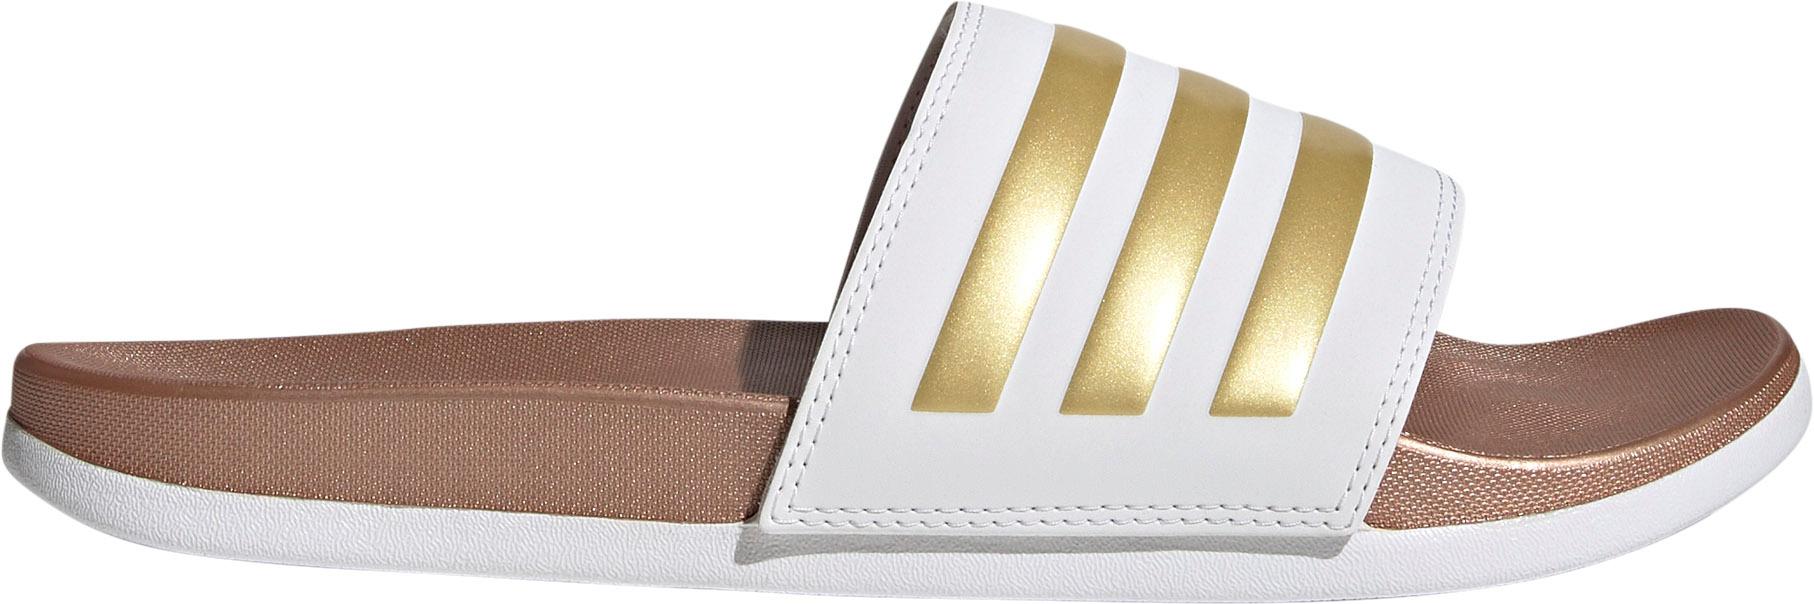 Adidas ADILETTE COMFORT Badelatschen Damen ftwr white-ftwr white-matte gold  im Online Shop von SportScheck kaufen